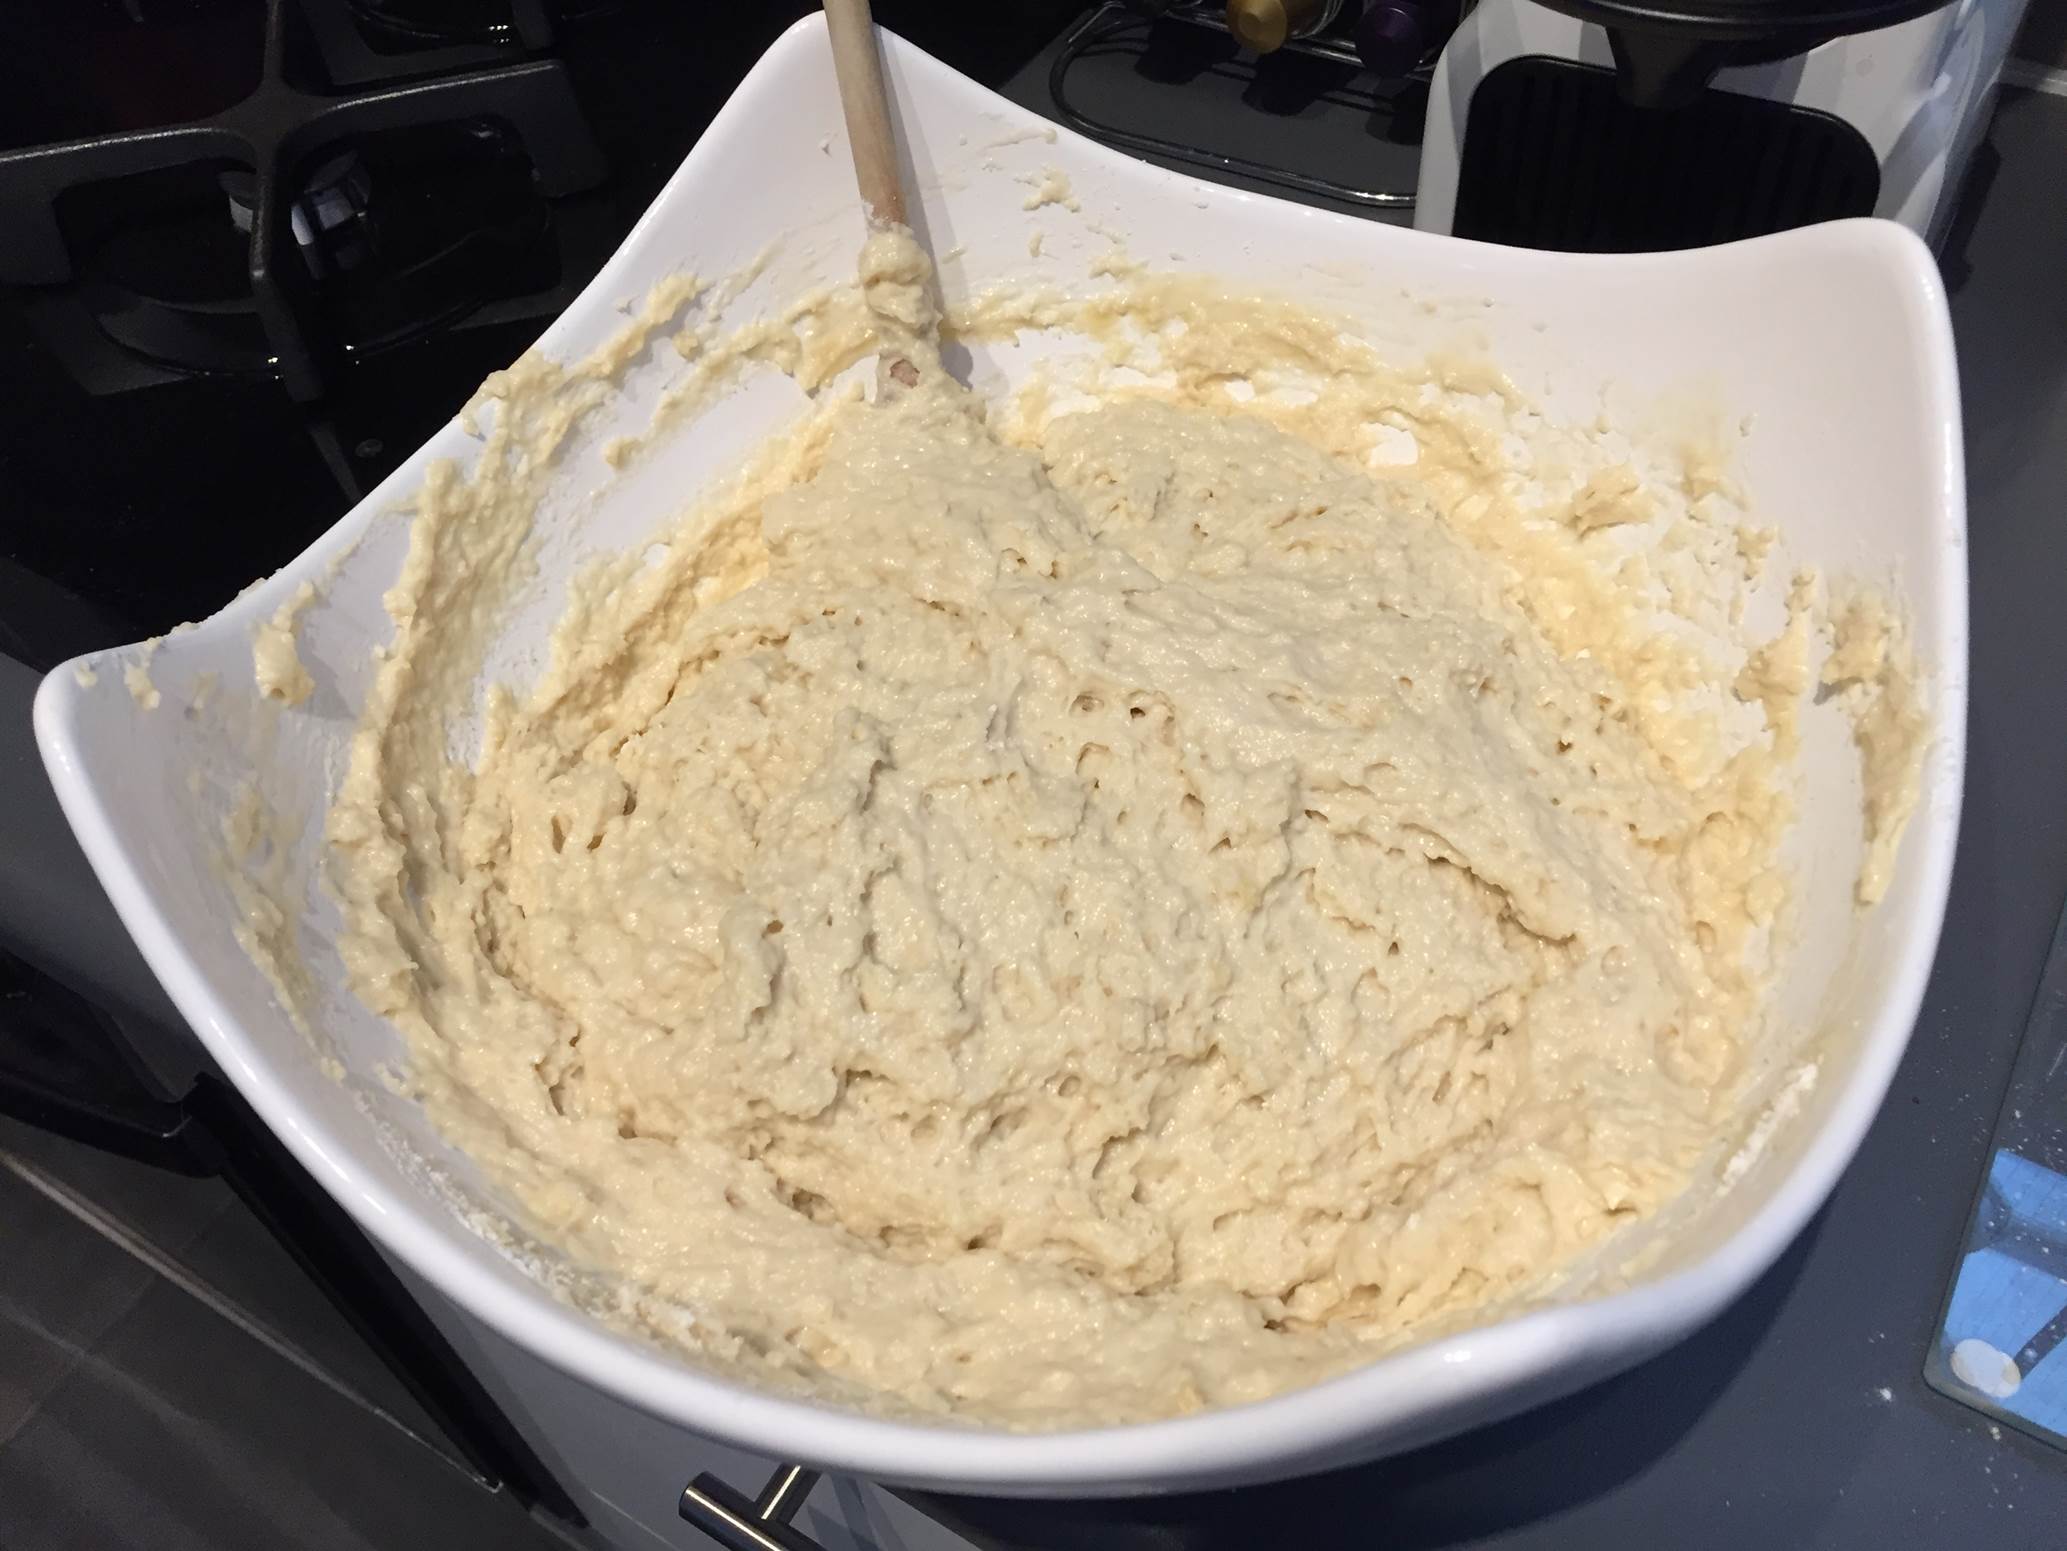 unrisen dough mixture